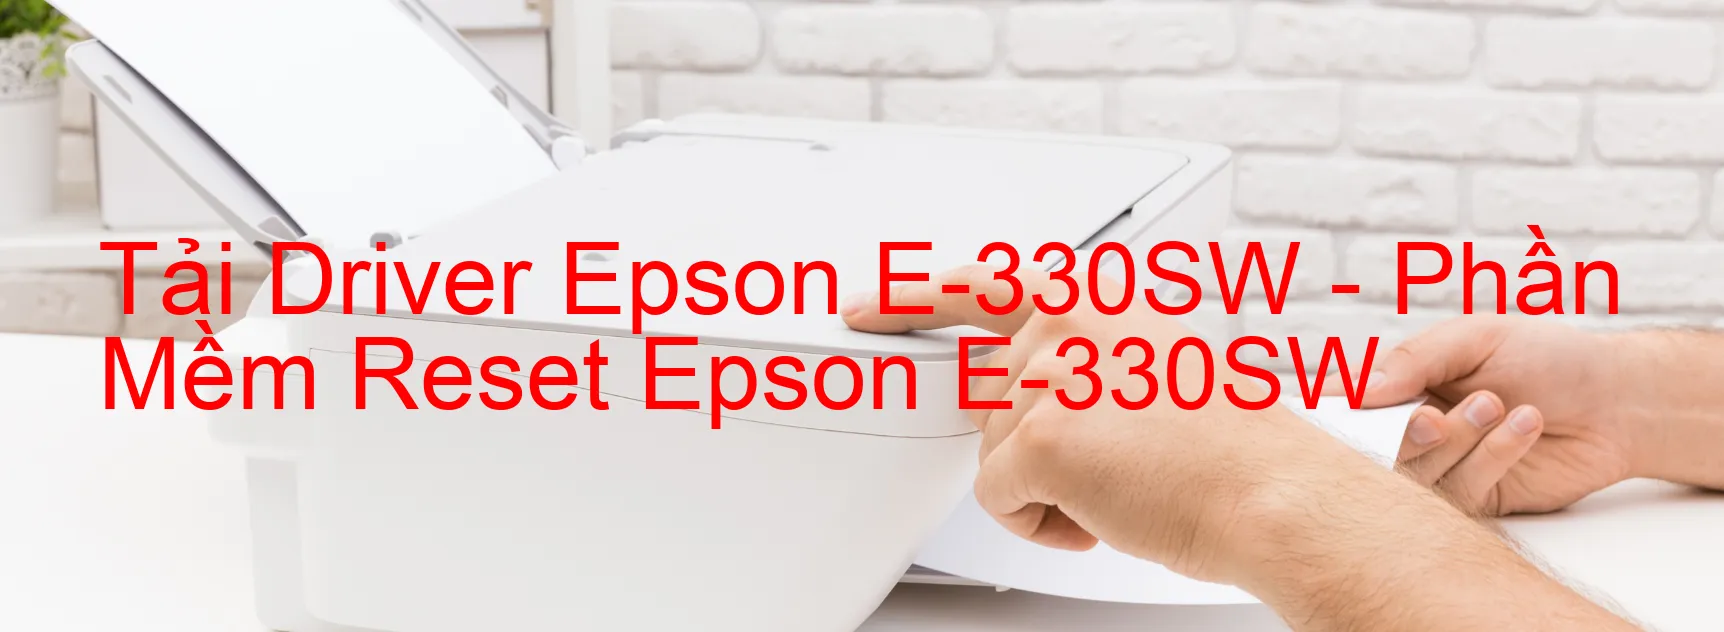 Driver Epson E-330SW, Phần Mềm Reset Epson E-330SW